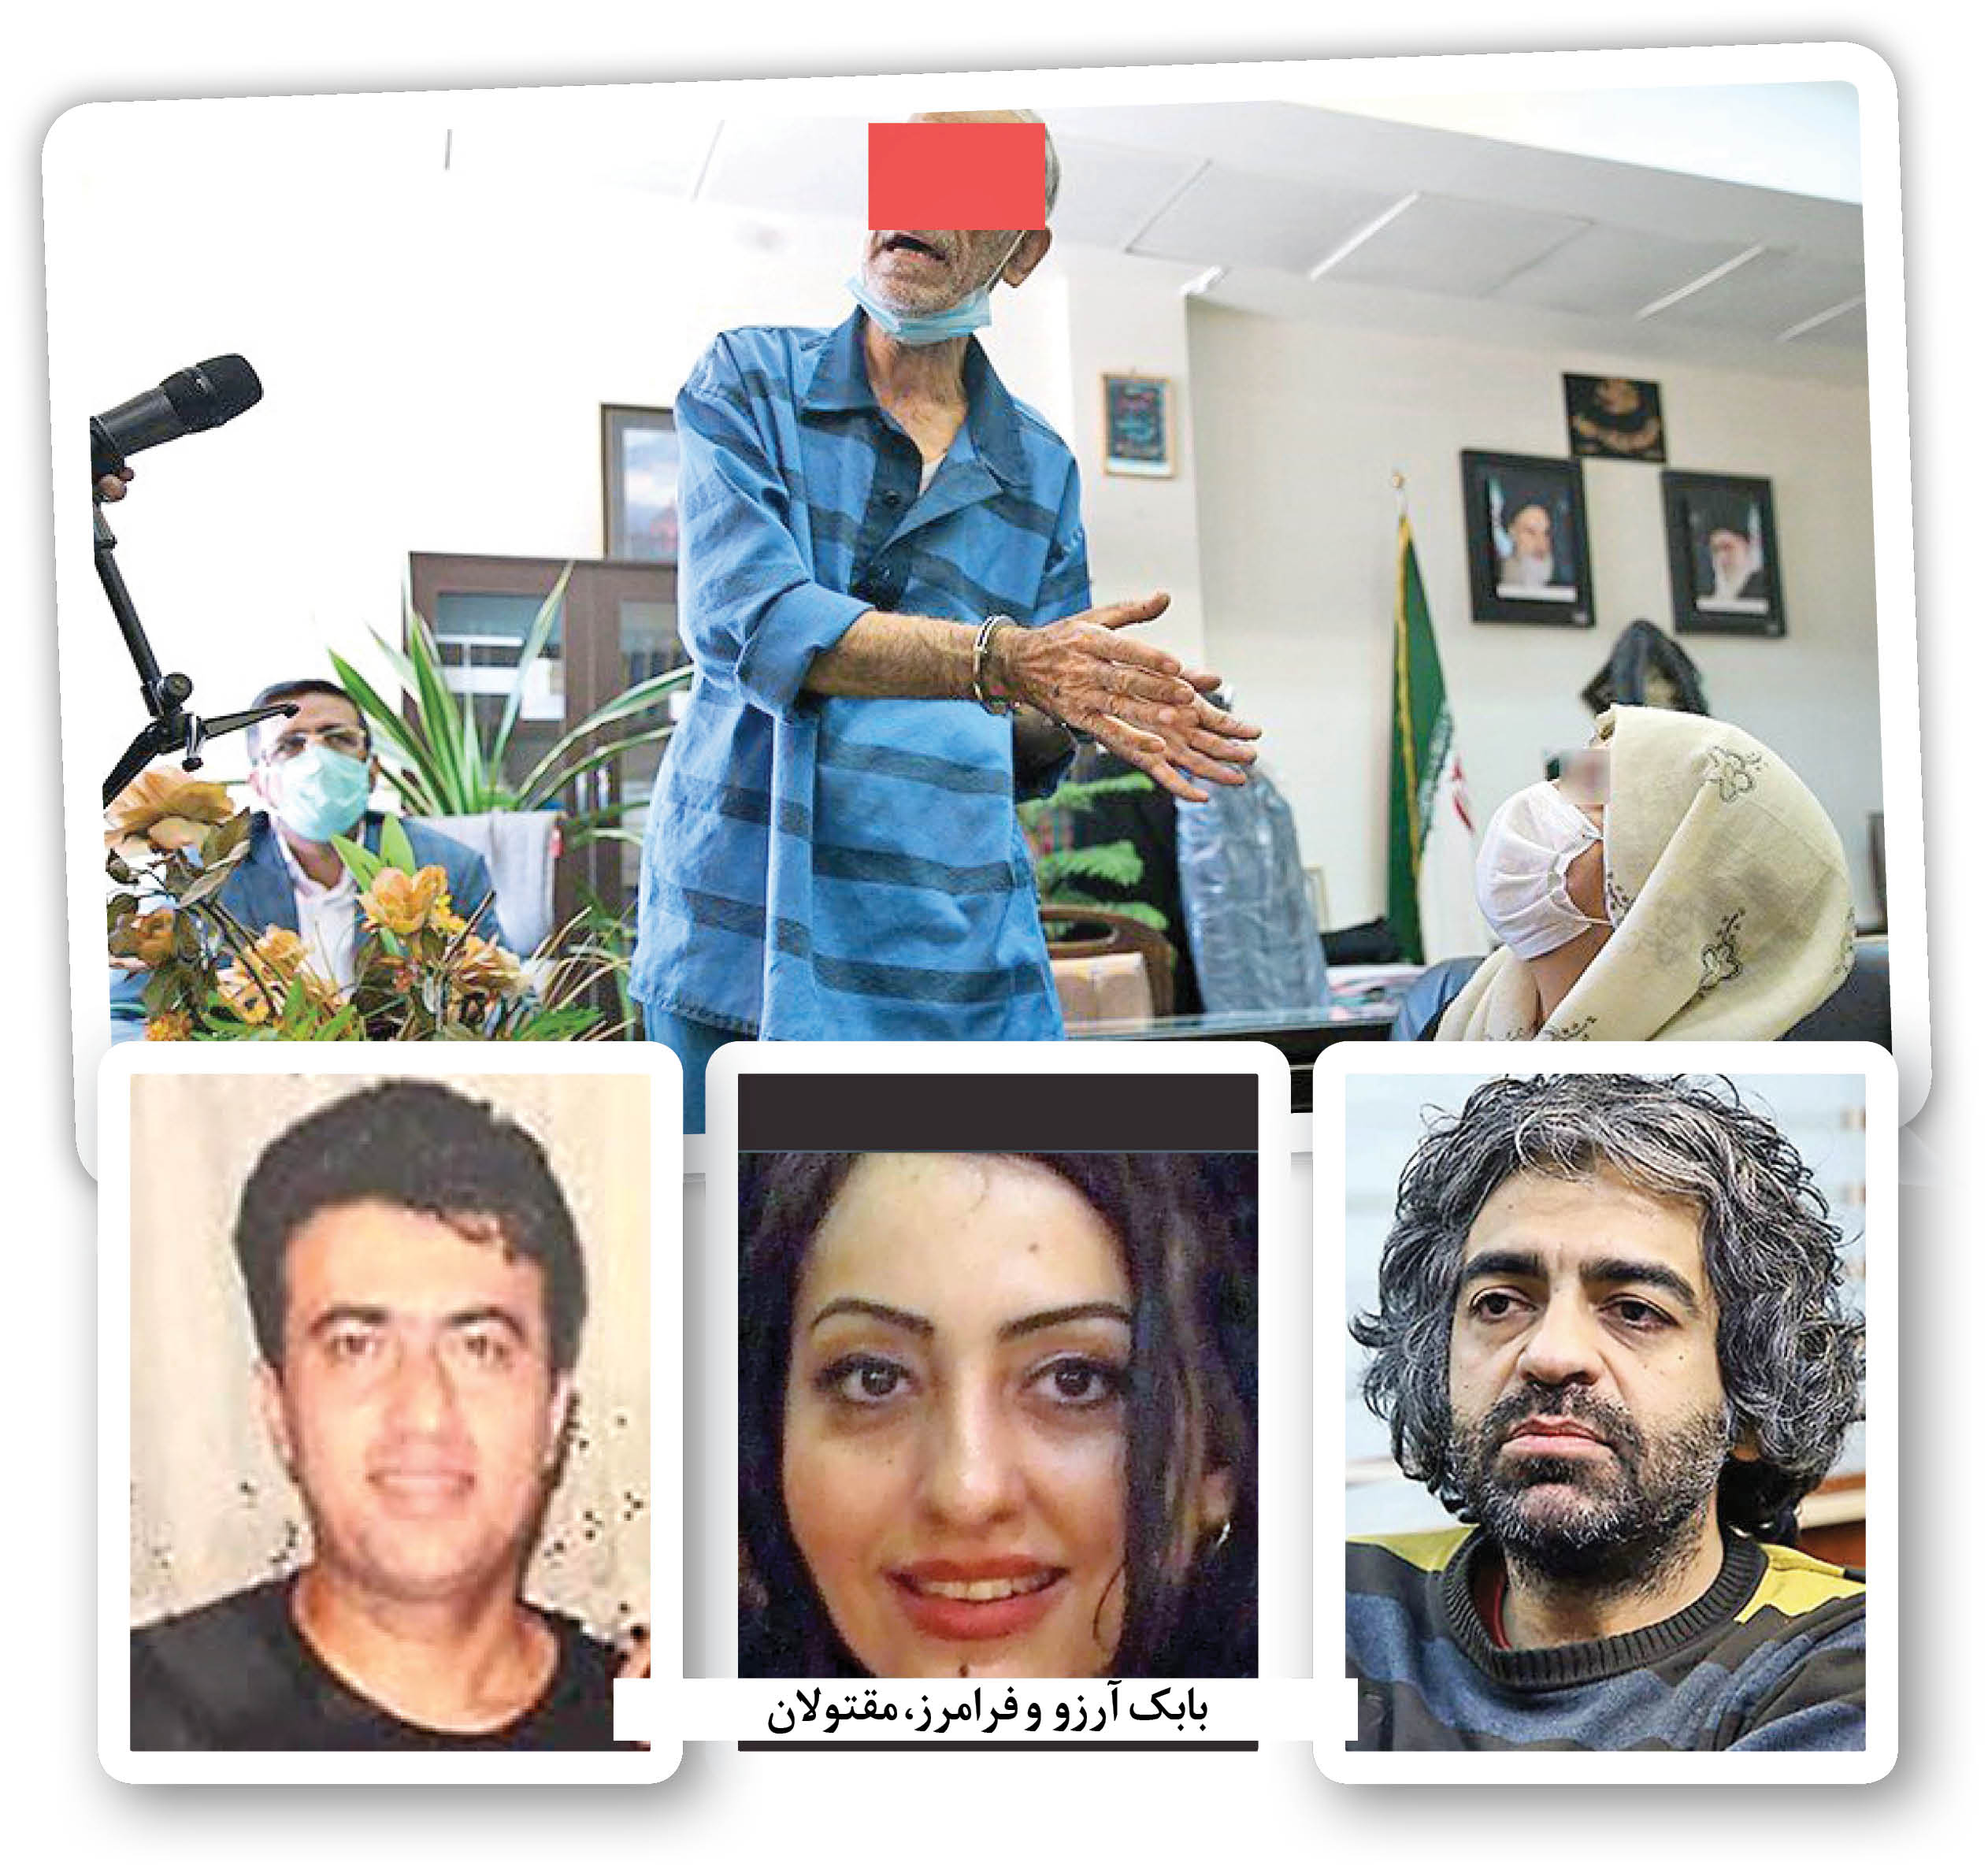 خانواده داماد خرمدین با حضور در دادسرای جنایی تهران از قصاص او گذشتند